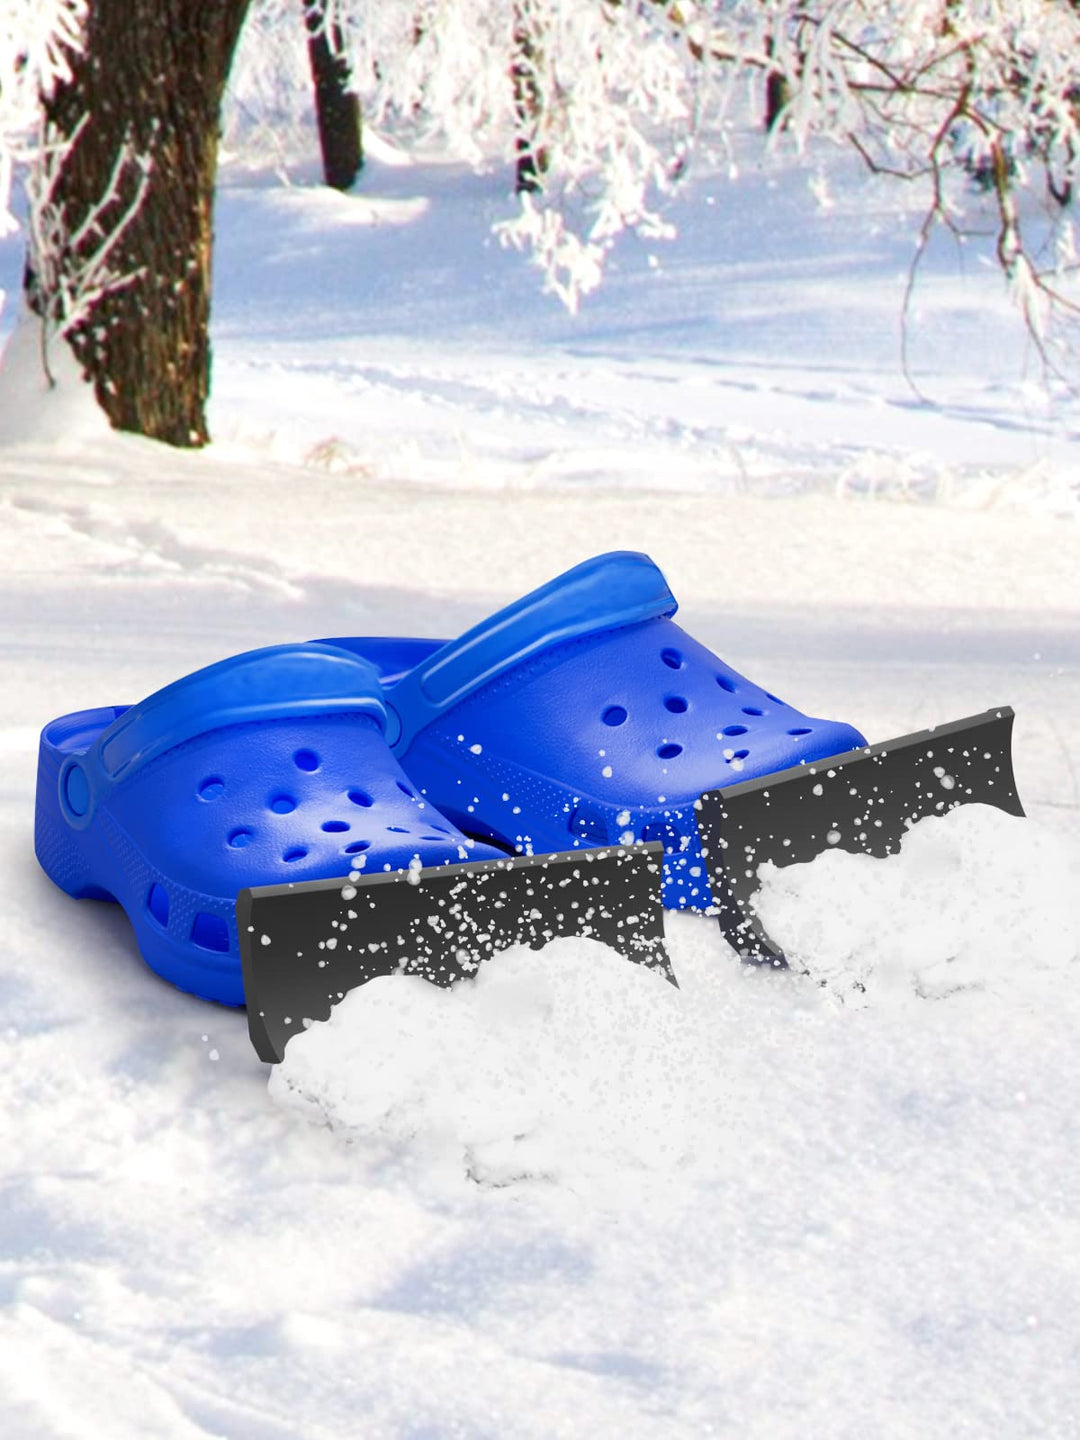 Croc Plows - Croc Shovels - Snow Plows - Croc snowplow (2 Pcs) - Croc Lights®